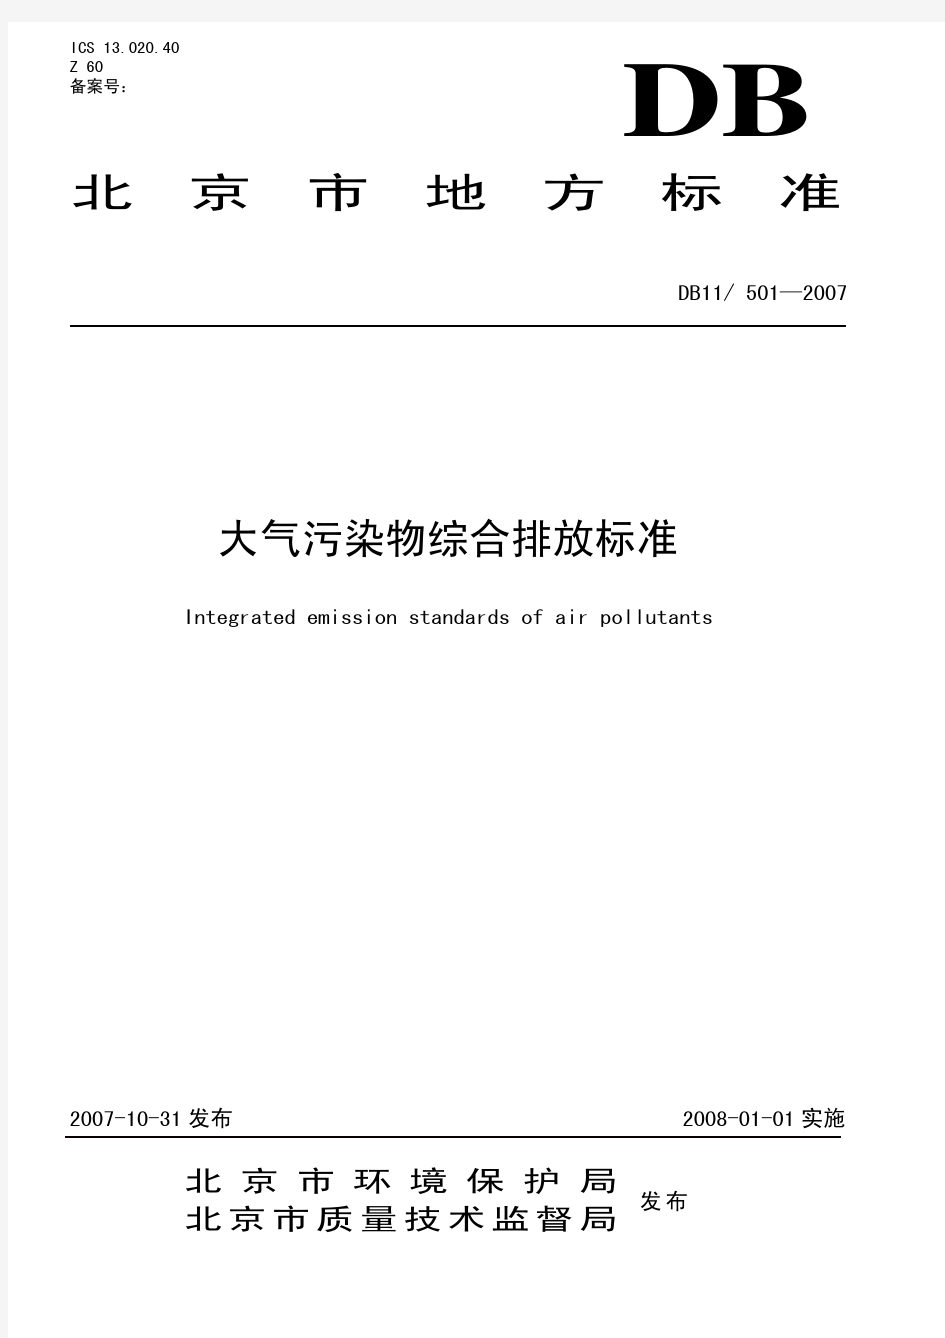 大气污染物综合排放标准DB11-501—2007